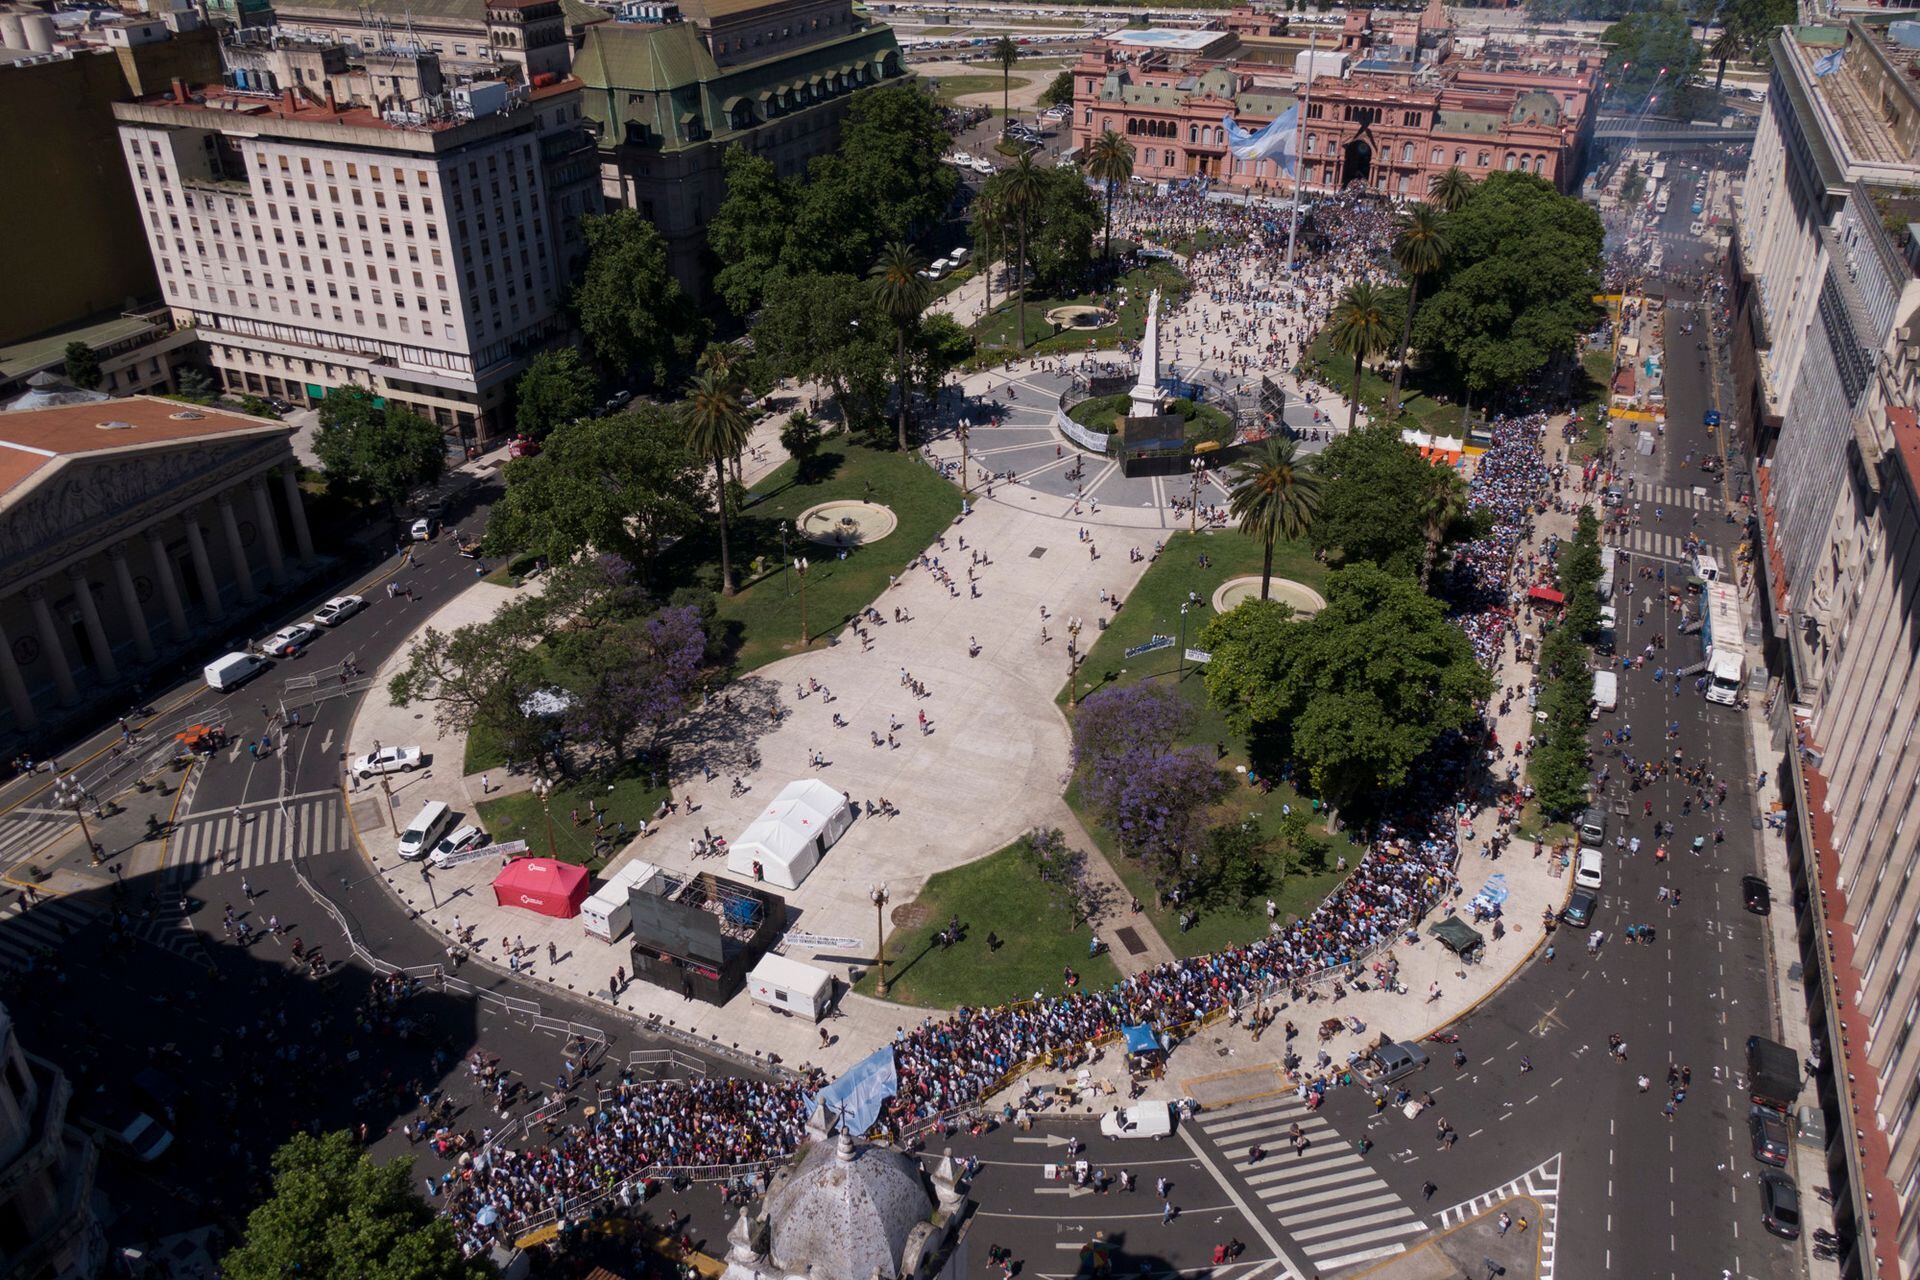 Vista aerea de Plaza de mayo y del cortejo funebre que parte desde Casa Rosada hacia el cementerio Bella Vista con los restos de Diego Armando Maradona